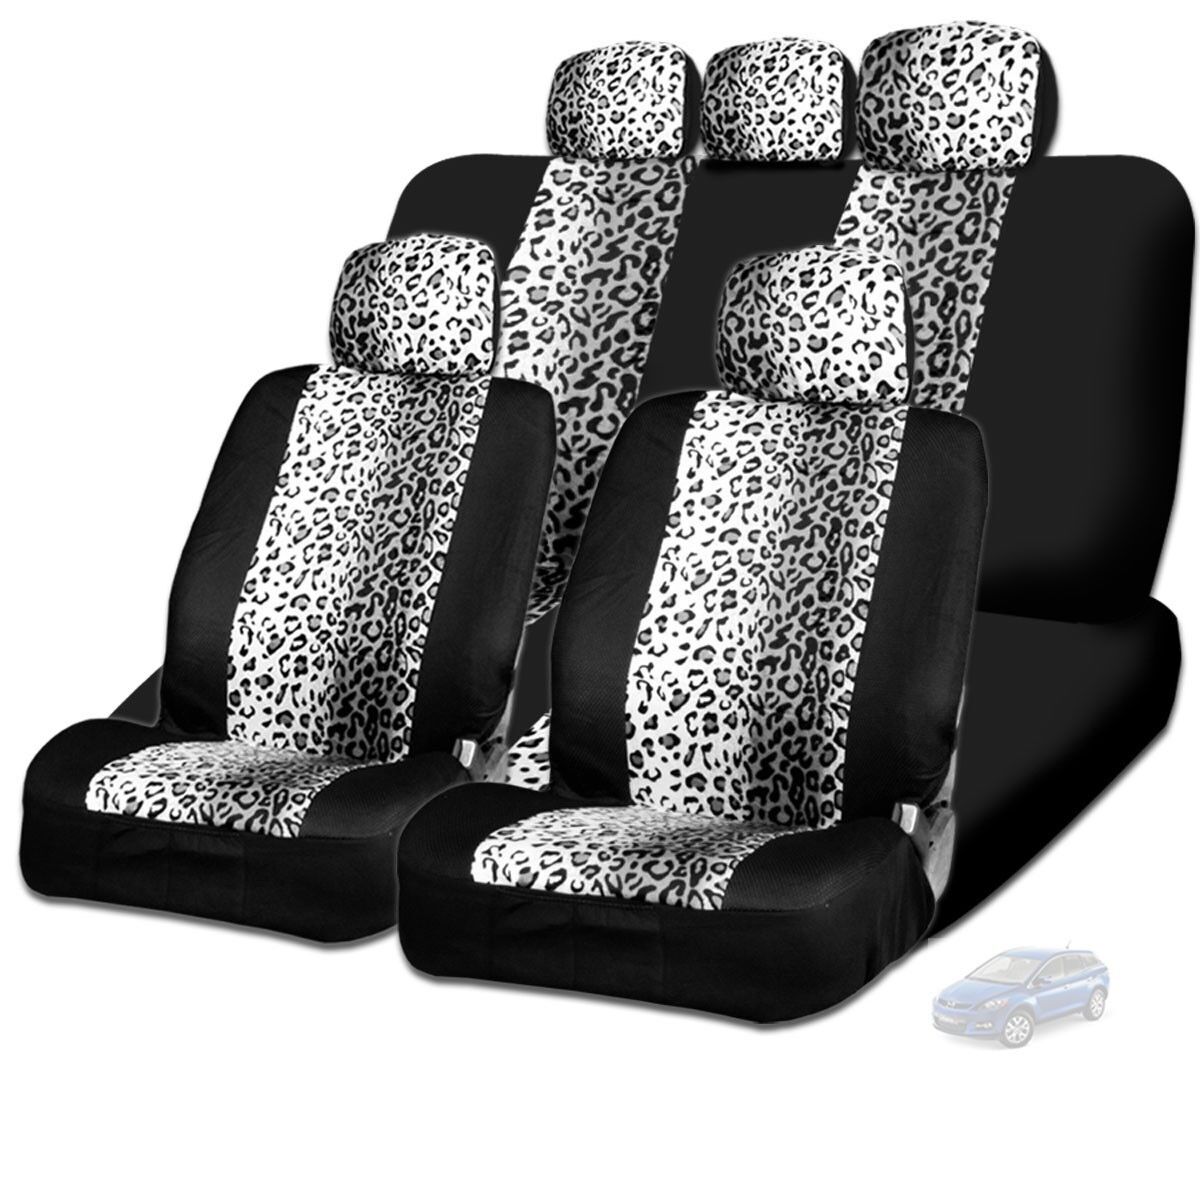 New Design Safari Snow Leopard Print Car Truck SUV Seat Covers For Mazda